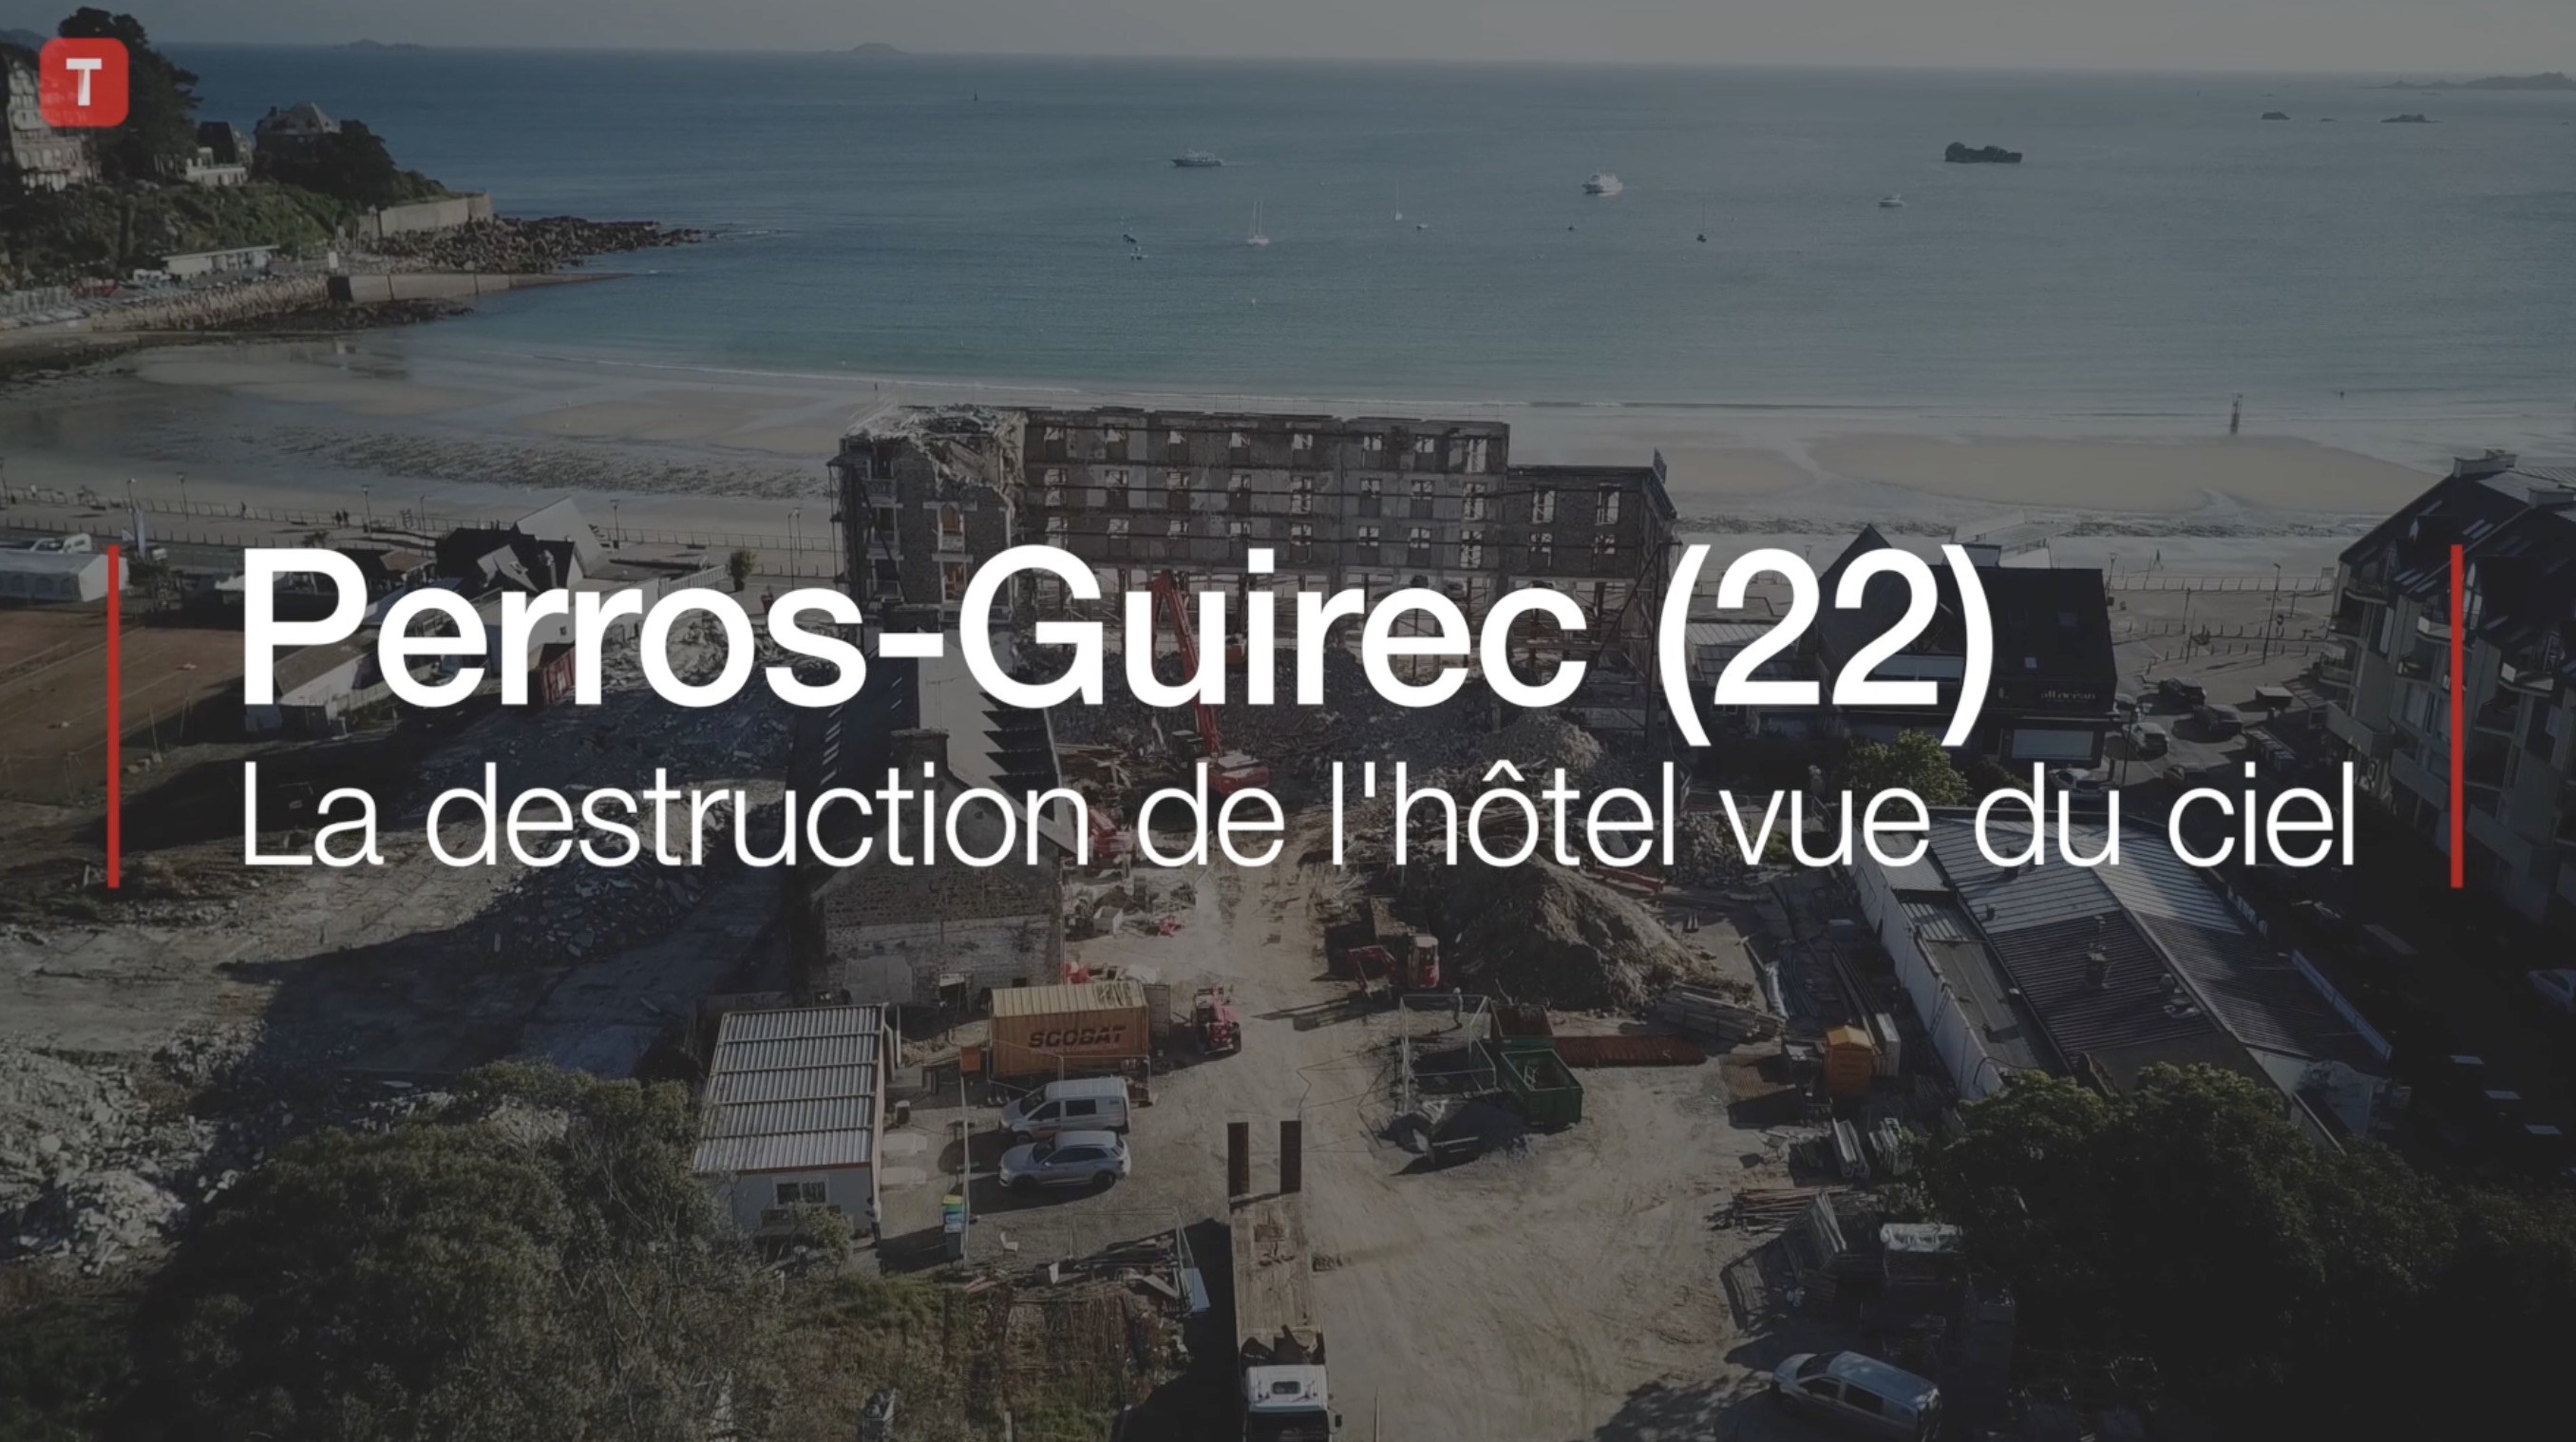 Perros-Guirec (22) : la destruction de l'hôtel vue du ciel (Le Télégramme)